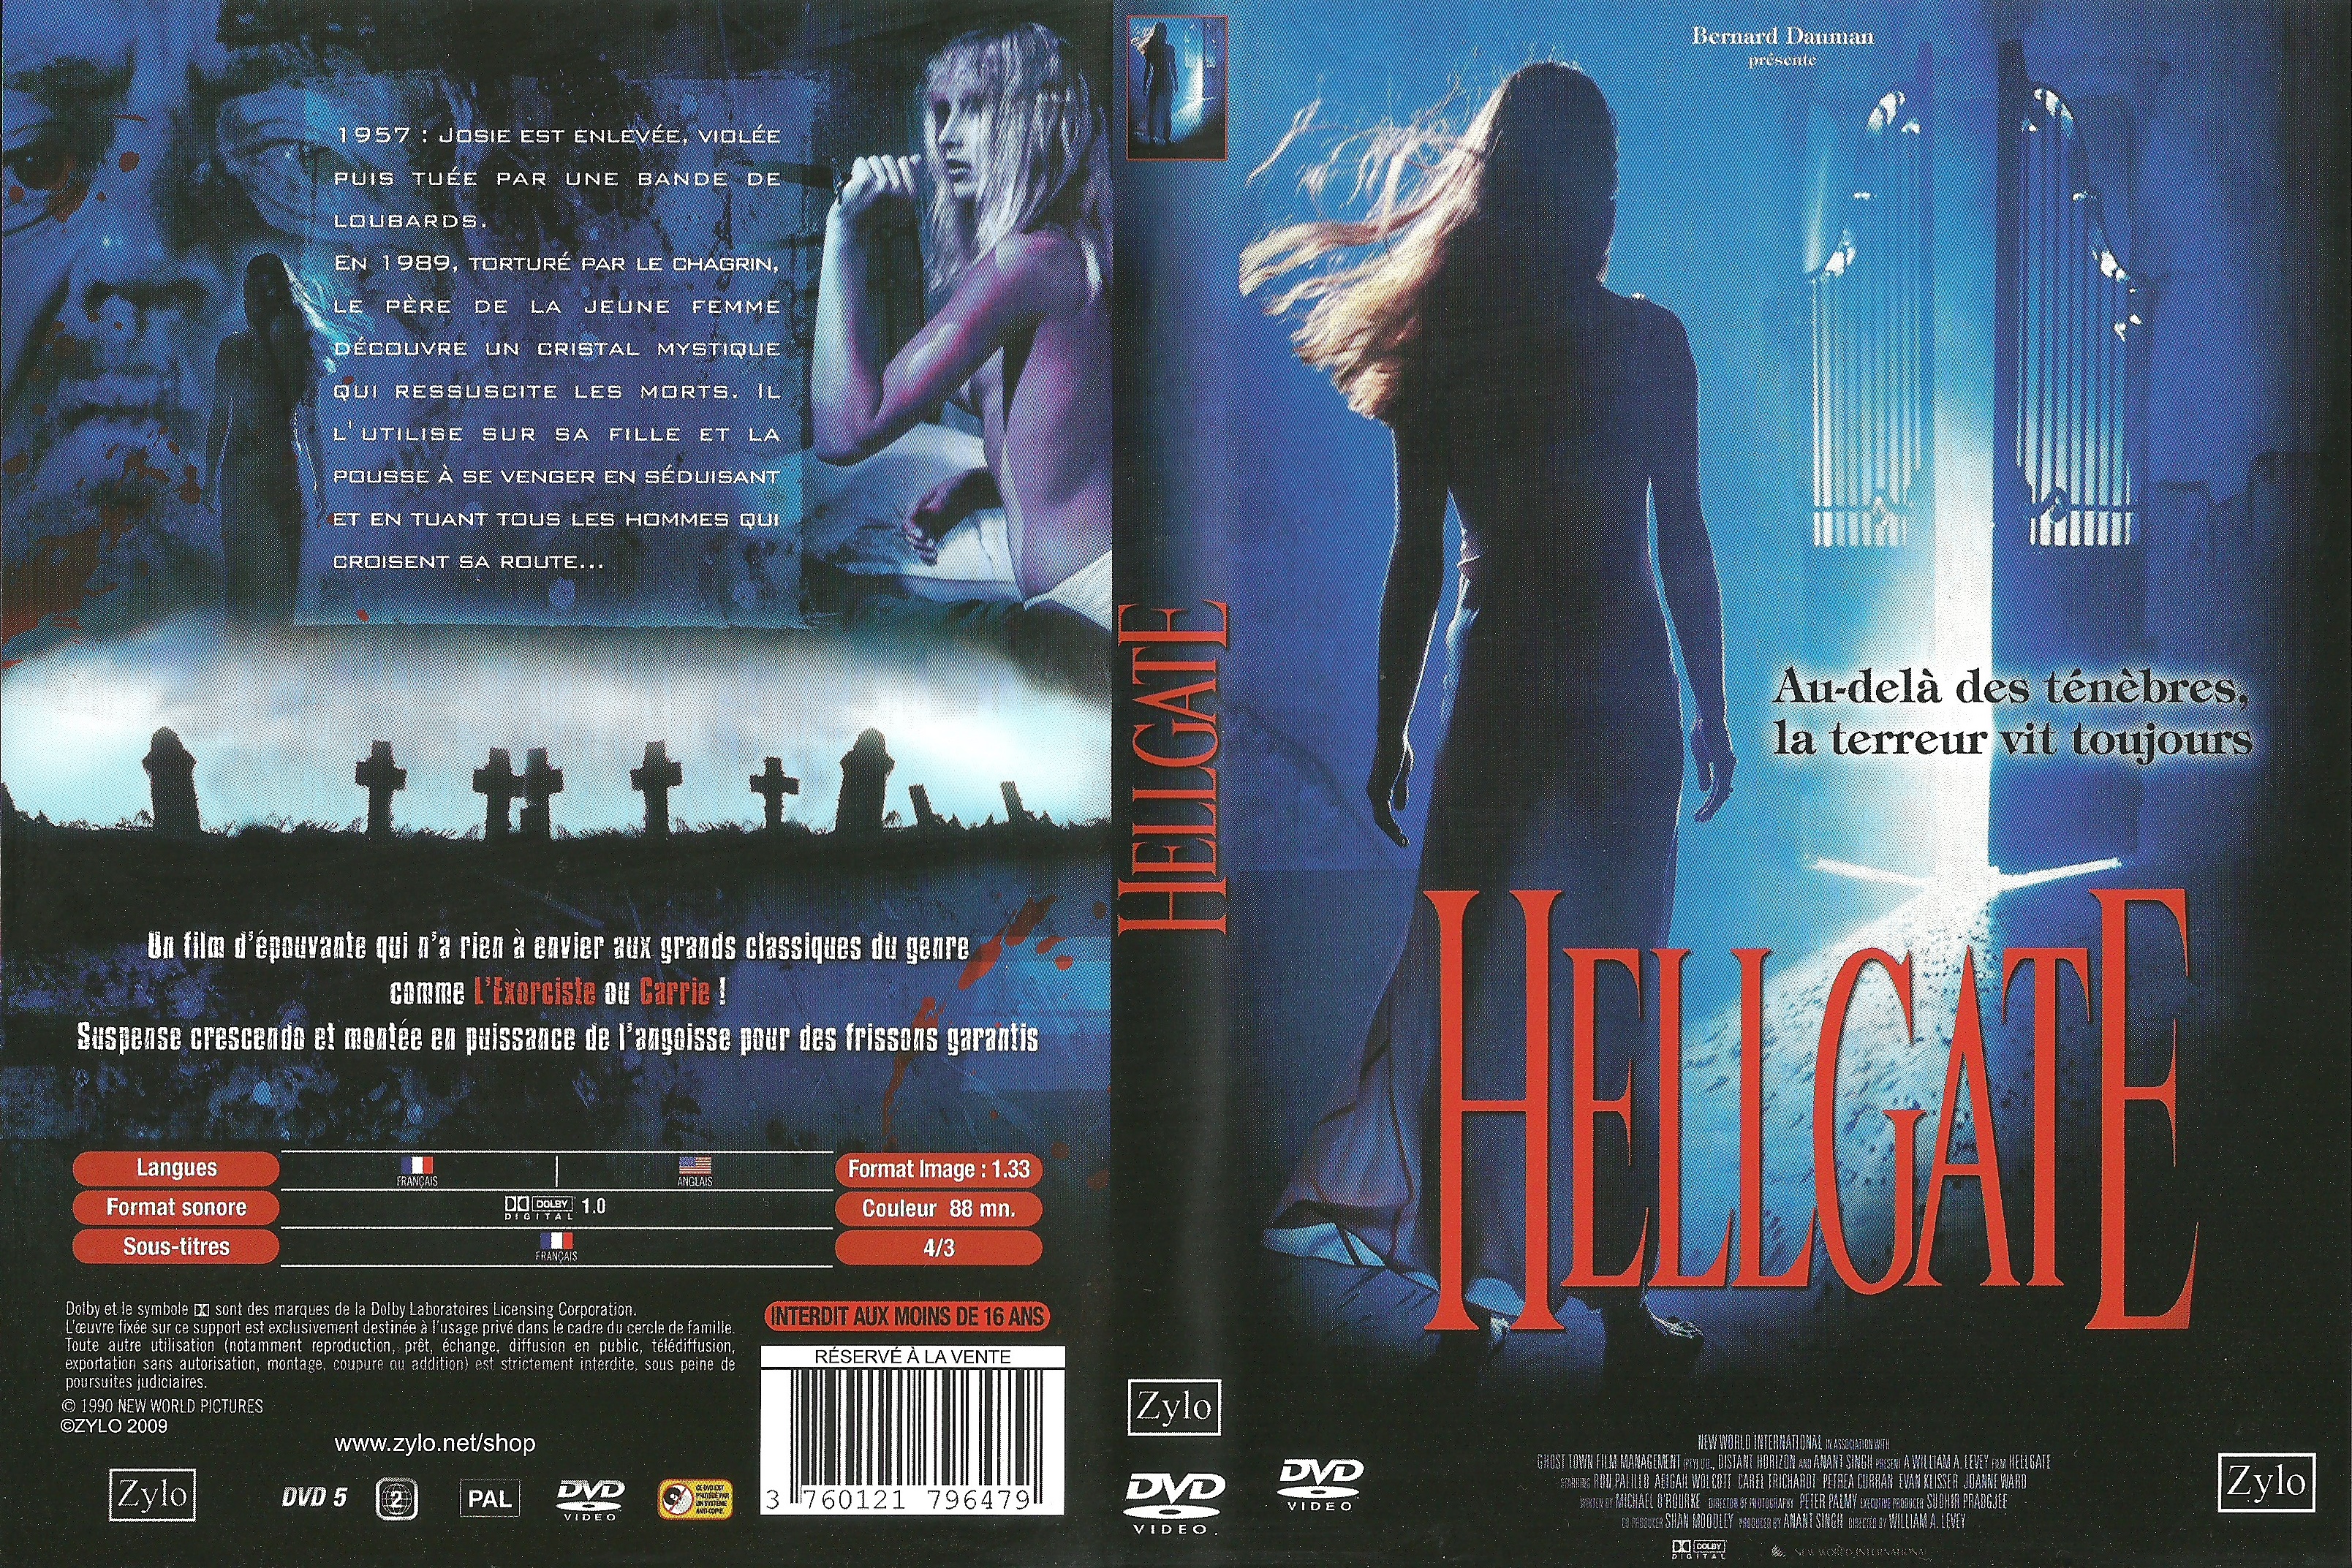 Jaquette DVD Hellgate v2